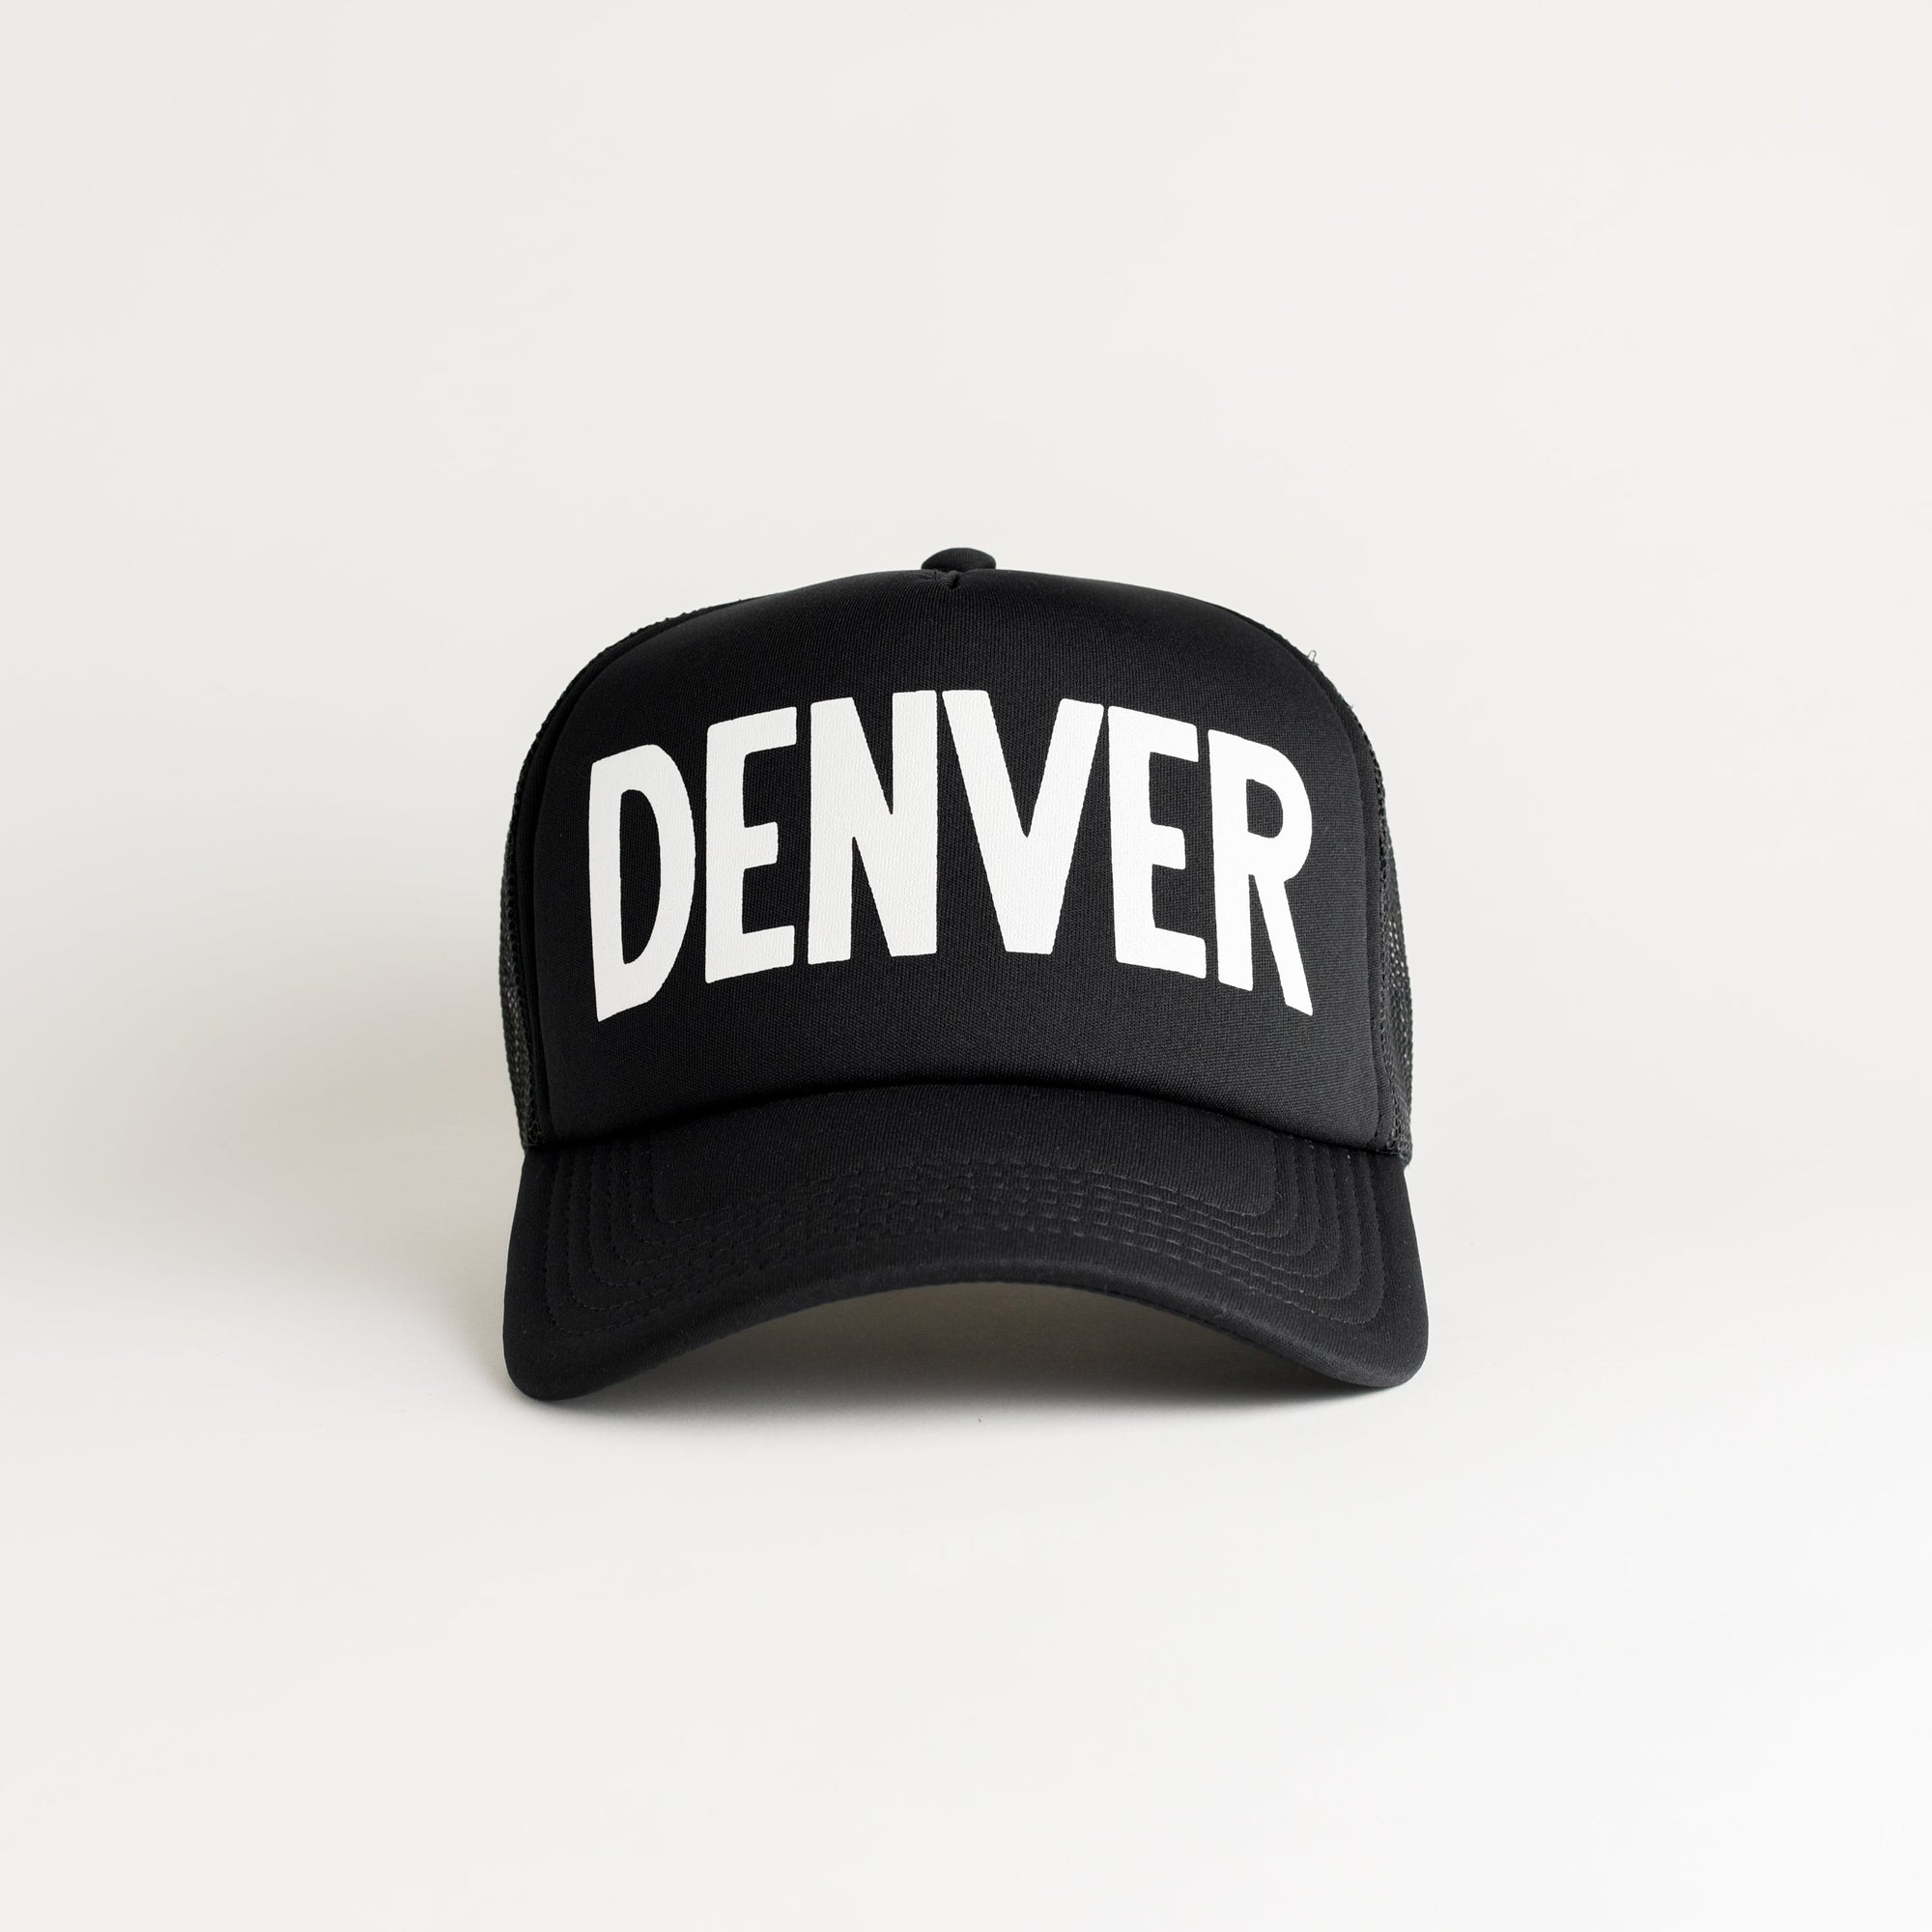 Denver Recycled Trucker Hat - black